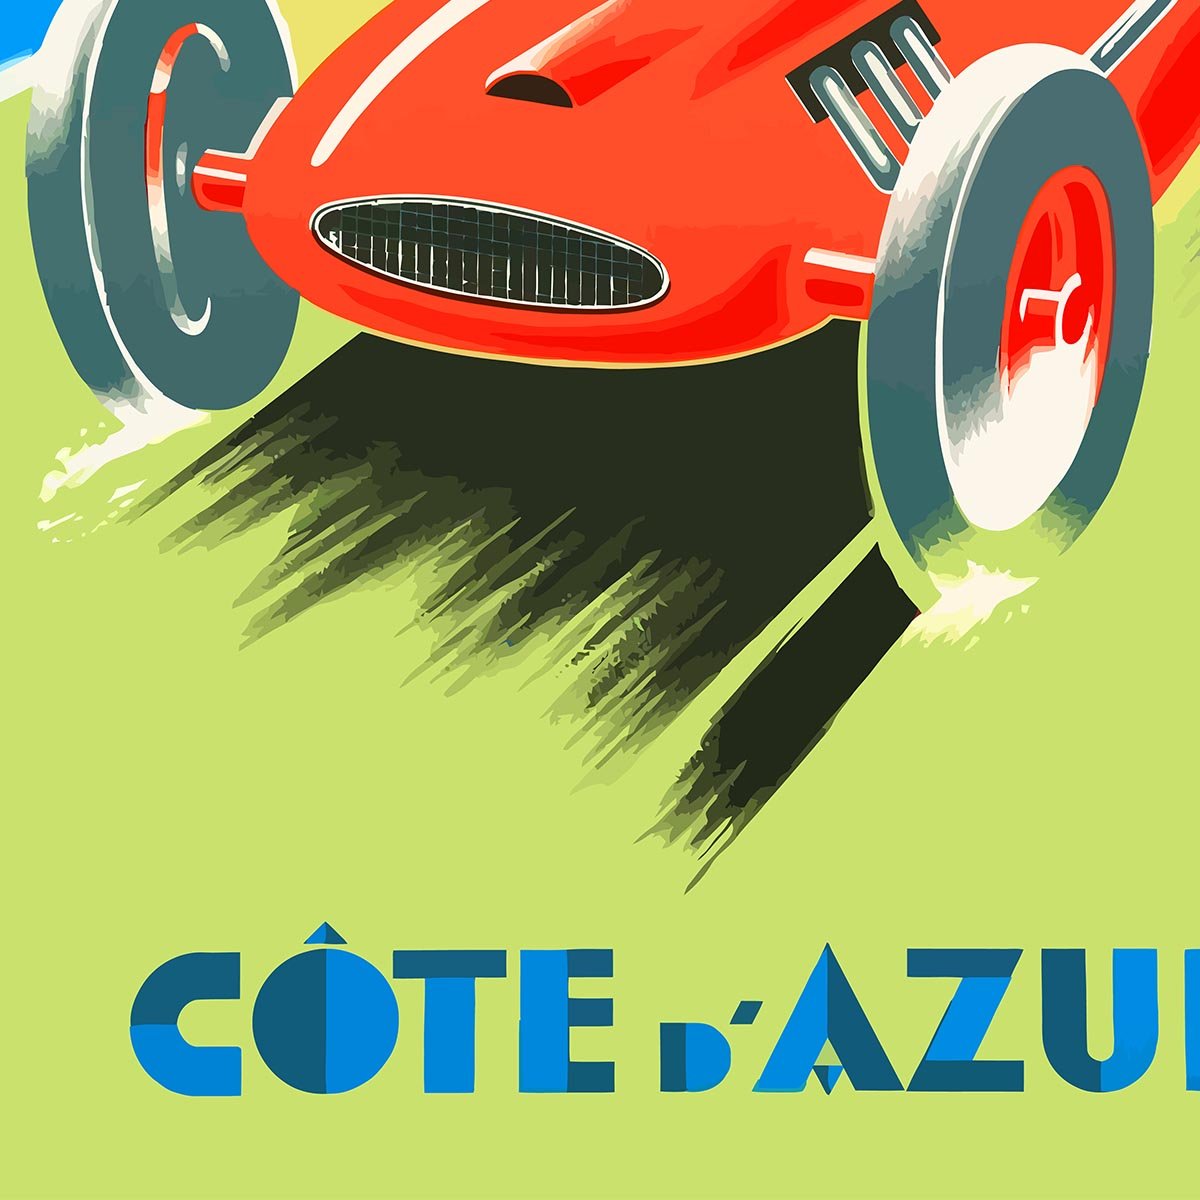 Côte d'Azur Travel Poster